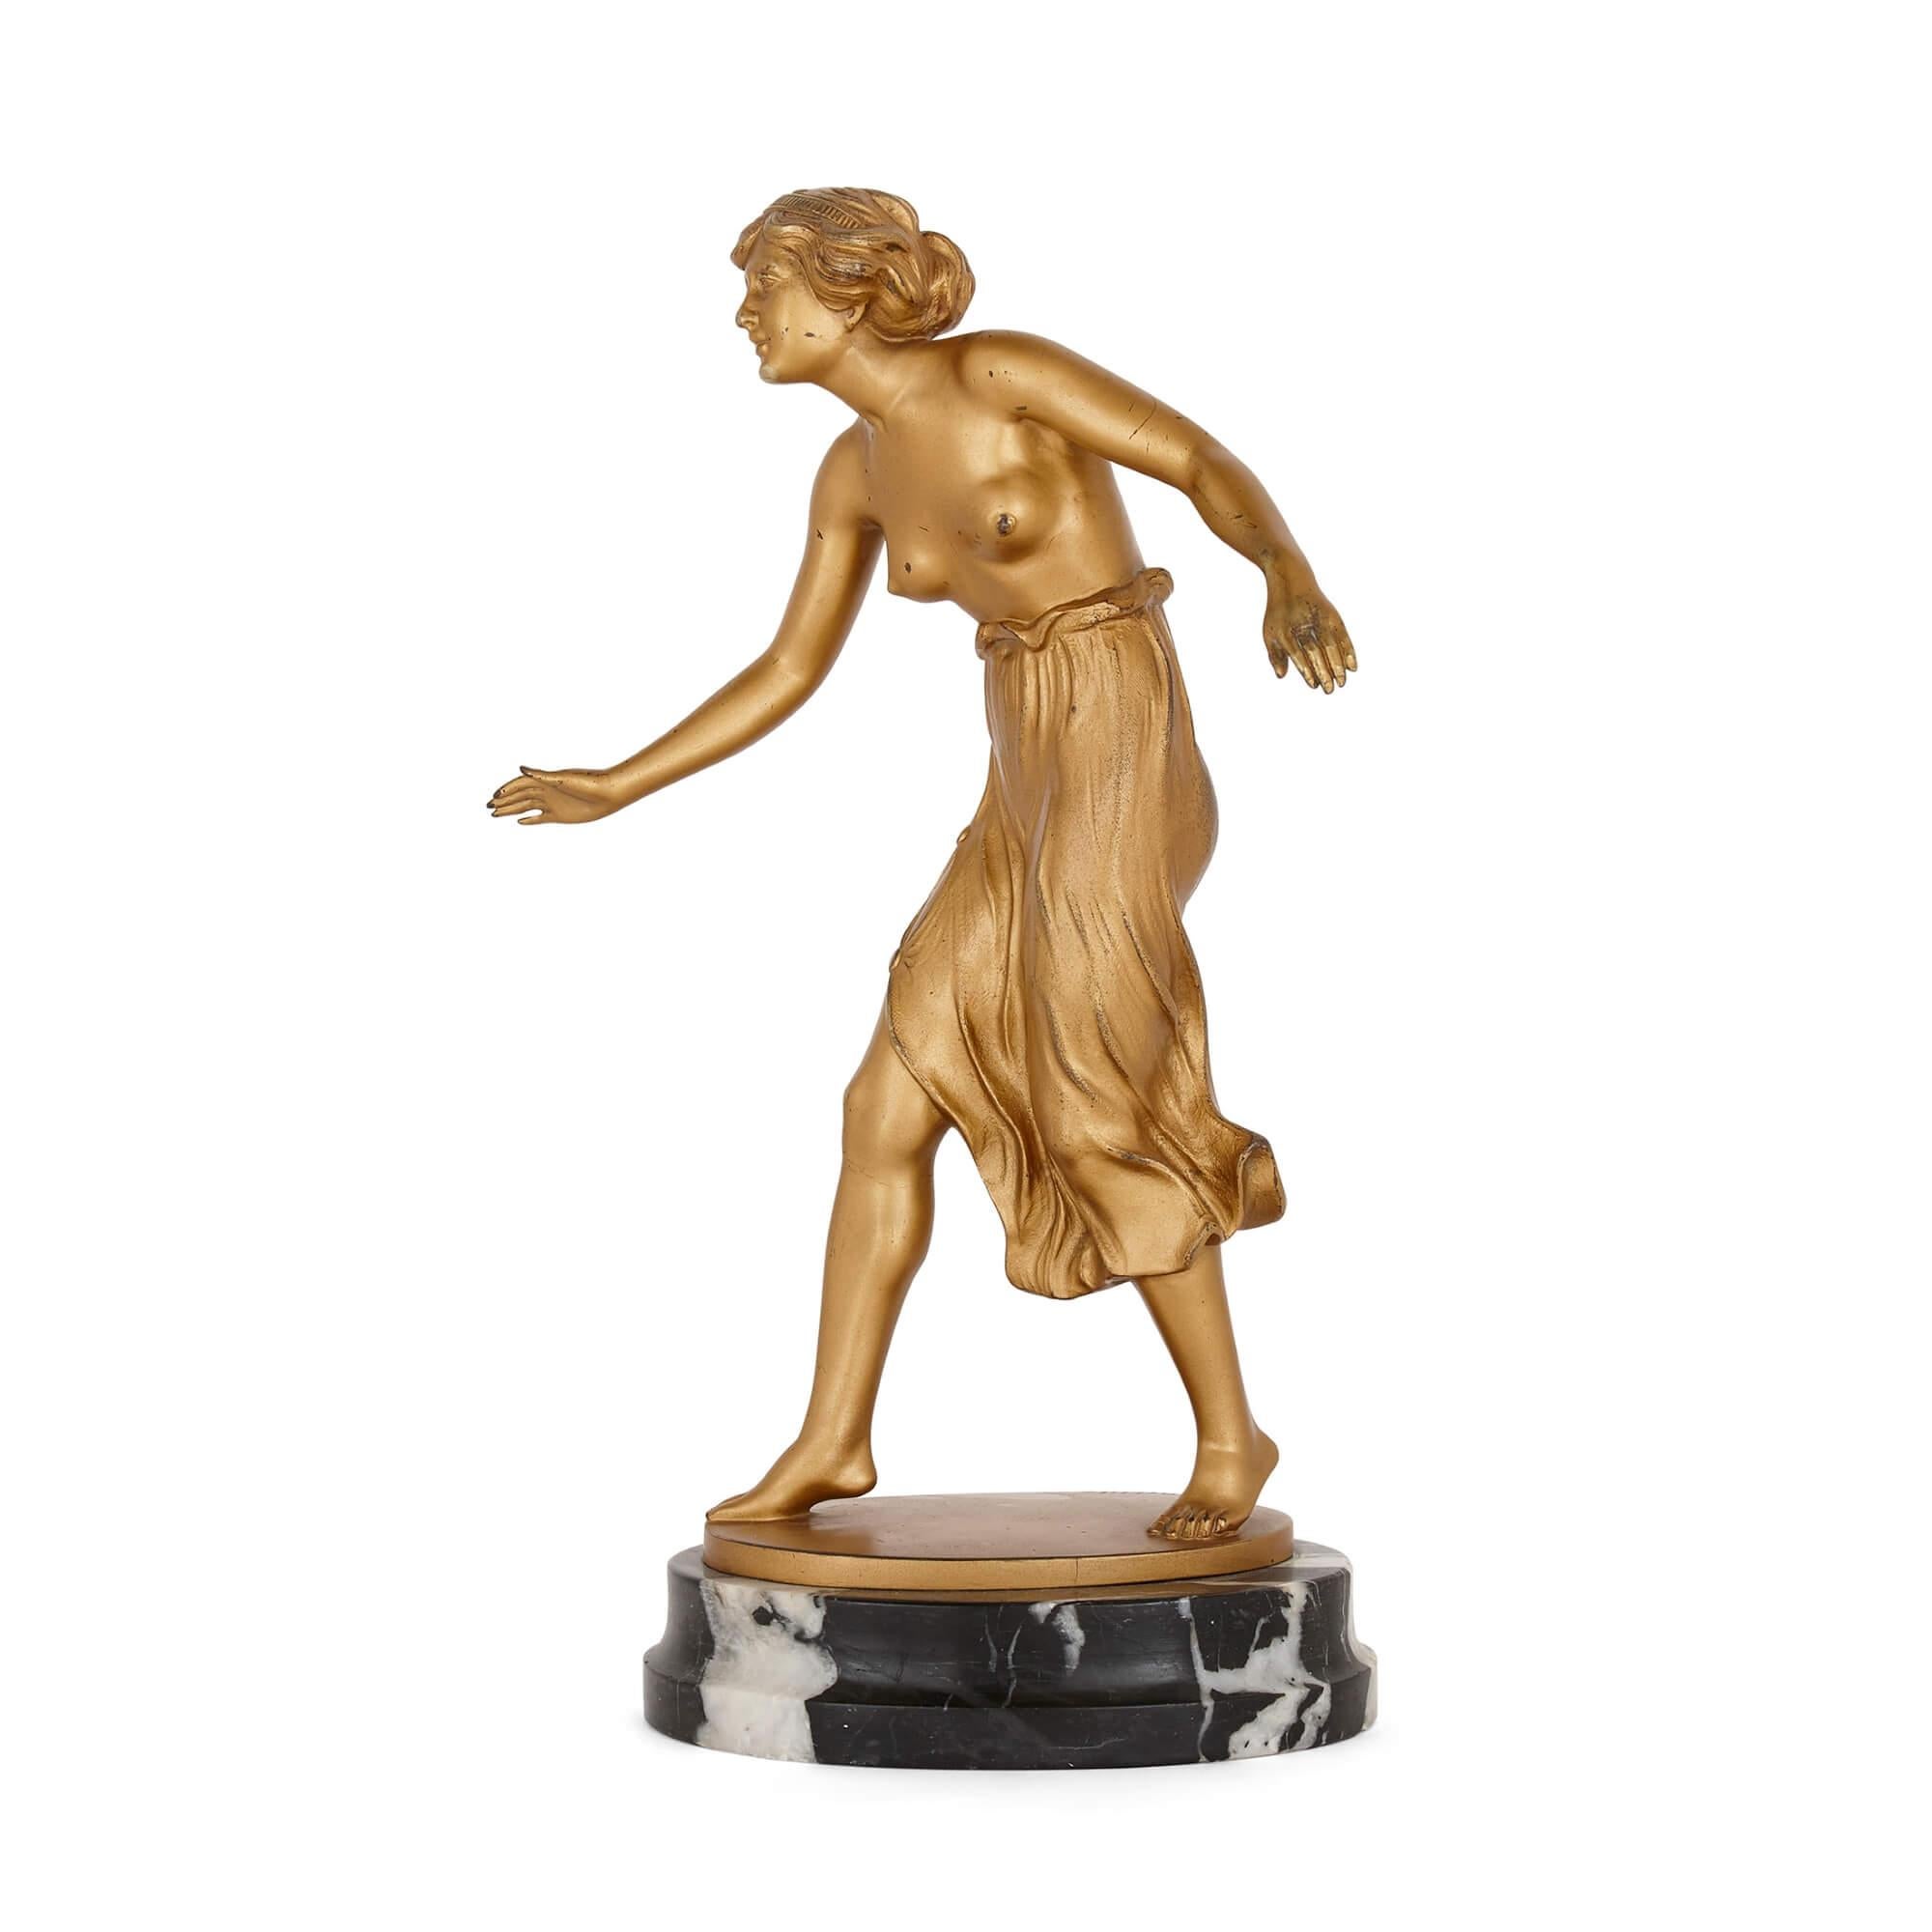 Art Deco vergoldete Bronzeskulptur einer Frau von Rochlitz
Continental, um 1920
Maße: Höhe 30,5cm, Breite 16cm, Tiefe 13cm

Diese feine vergoldete Bronzeskulptur ist ein Beispiel für die Eleganz und Anmut des Art-Déco-Designs. Die Skulptur